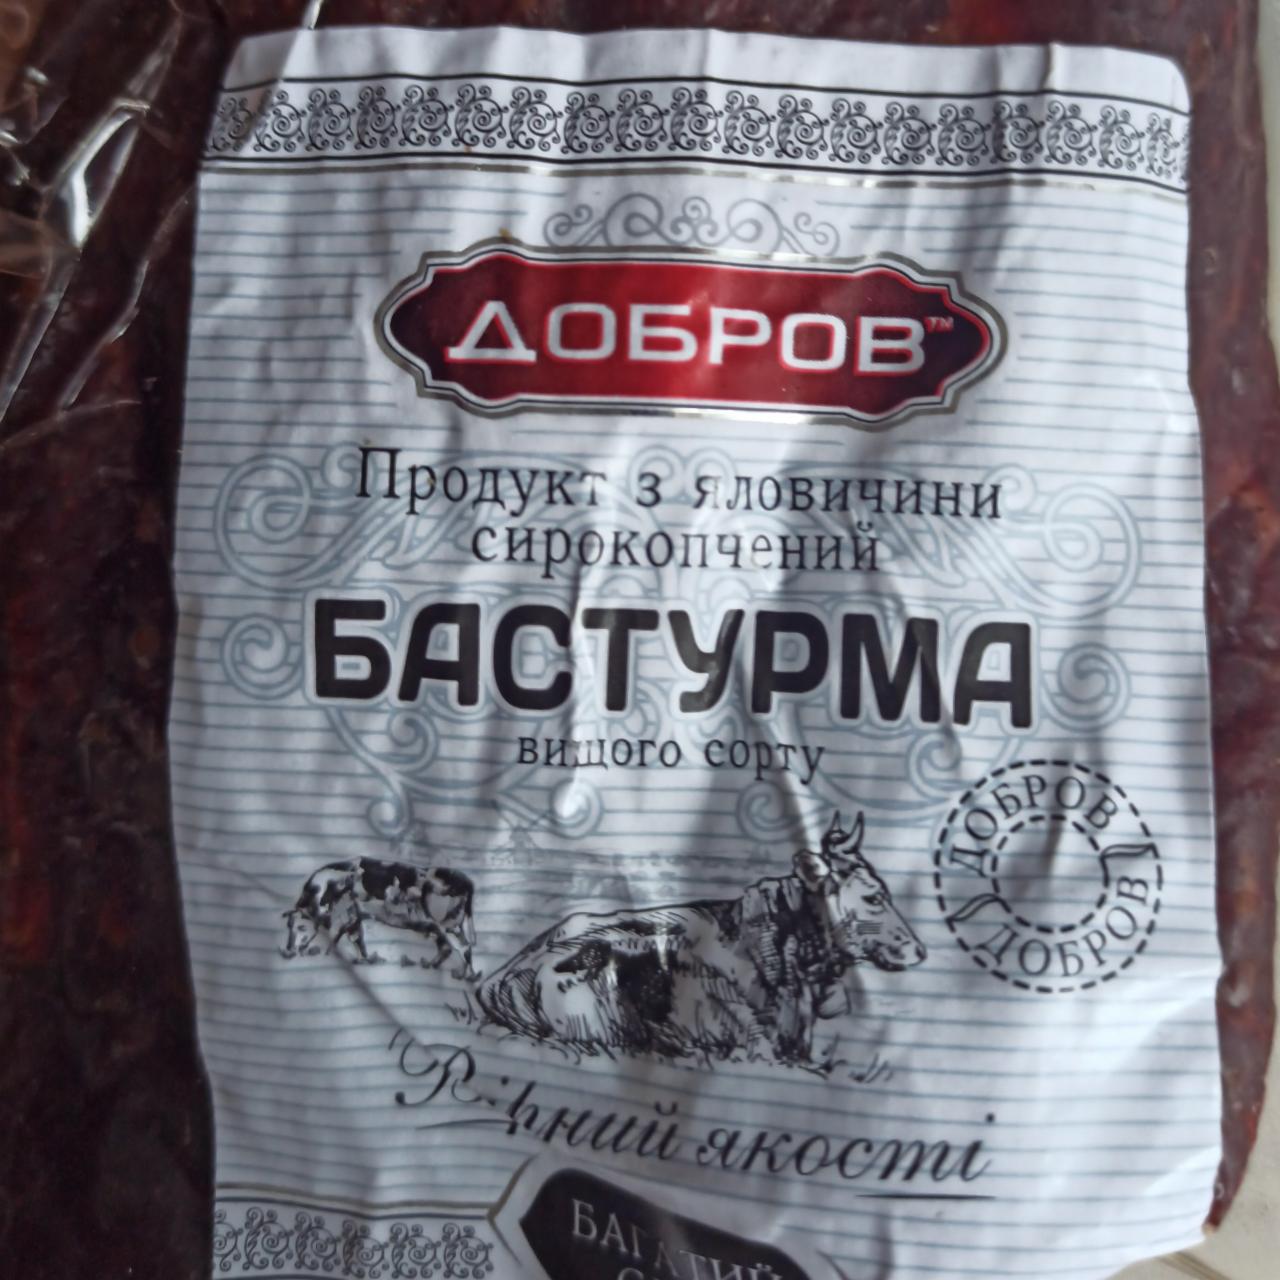 Фото - Продукт з яловичини сирокопчений Бастурма Добров